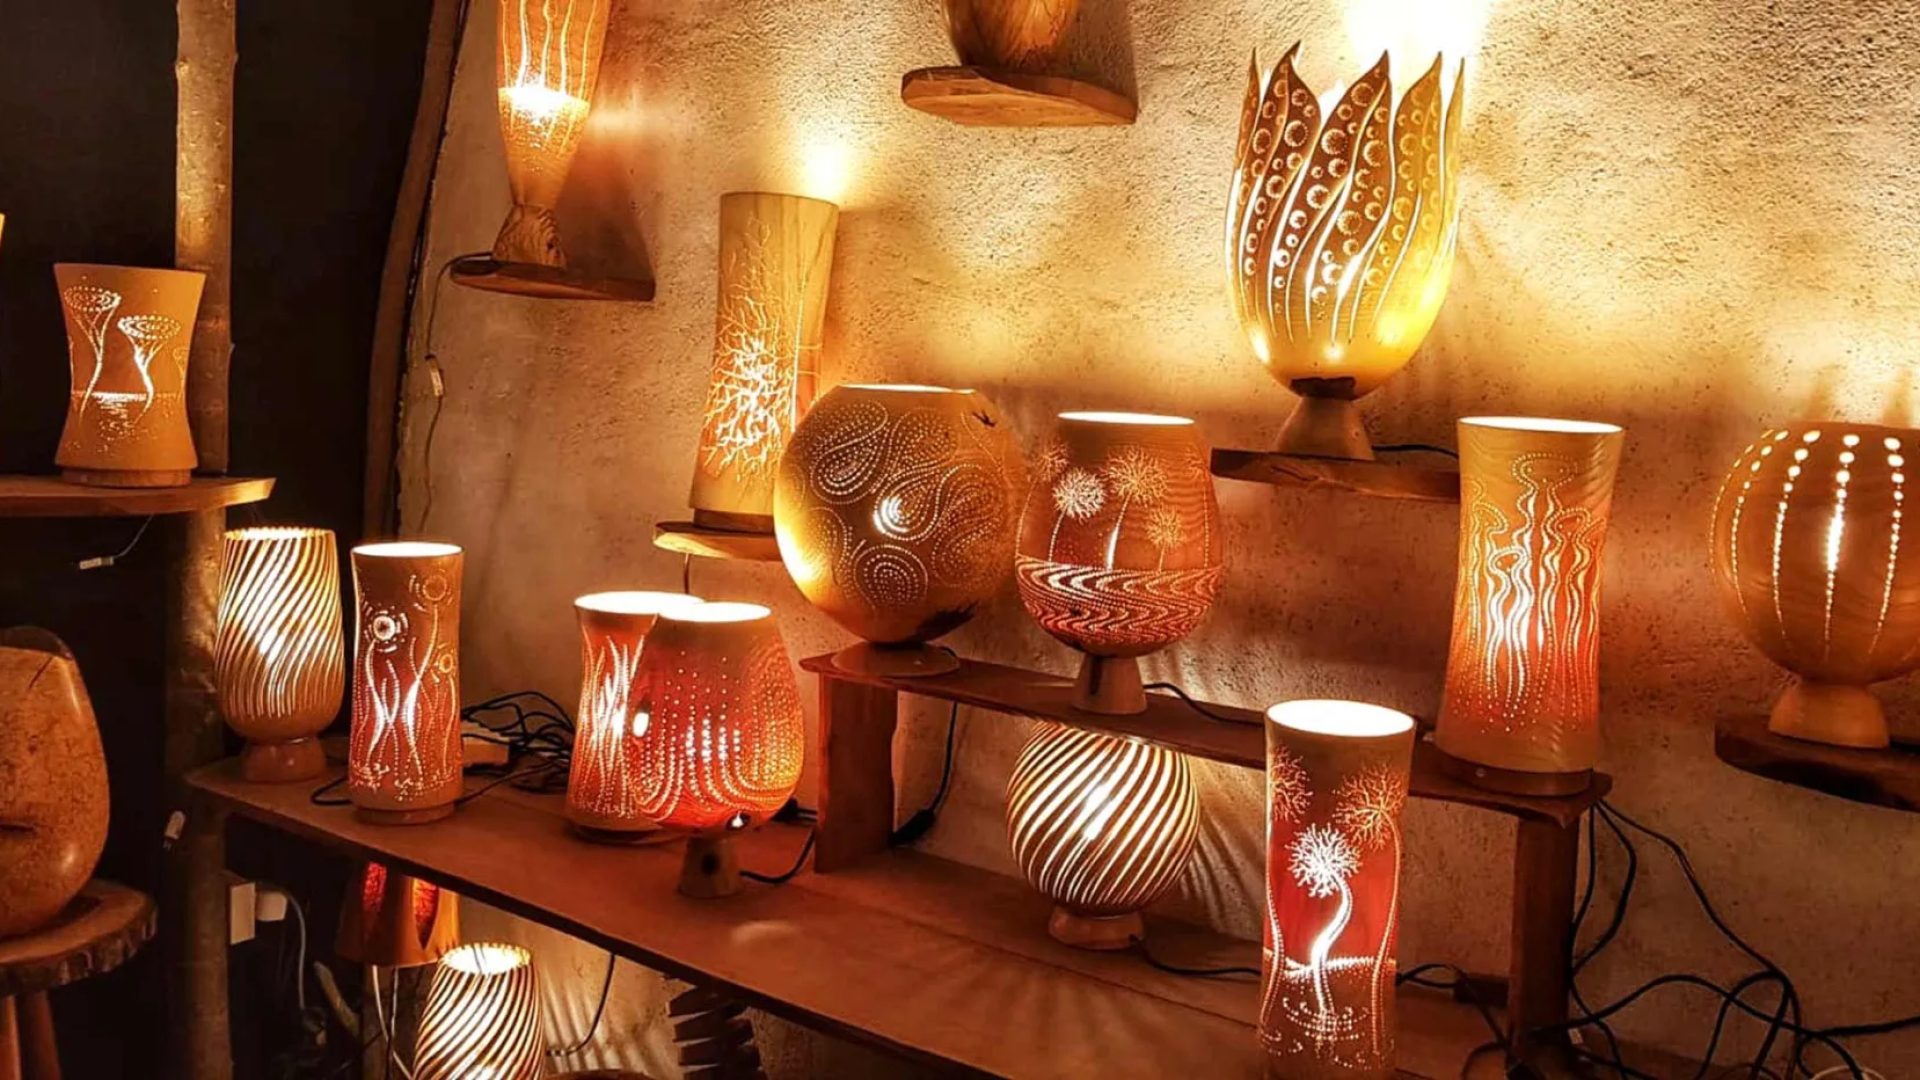 Regali fatti a mano "Made in Haute-Loire" grazie ad artisti locali e artigiani dell'illuminazione del legno